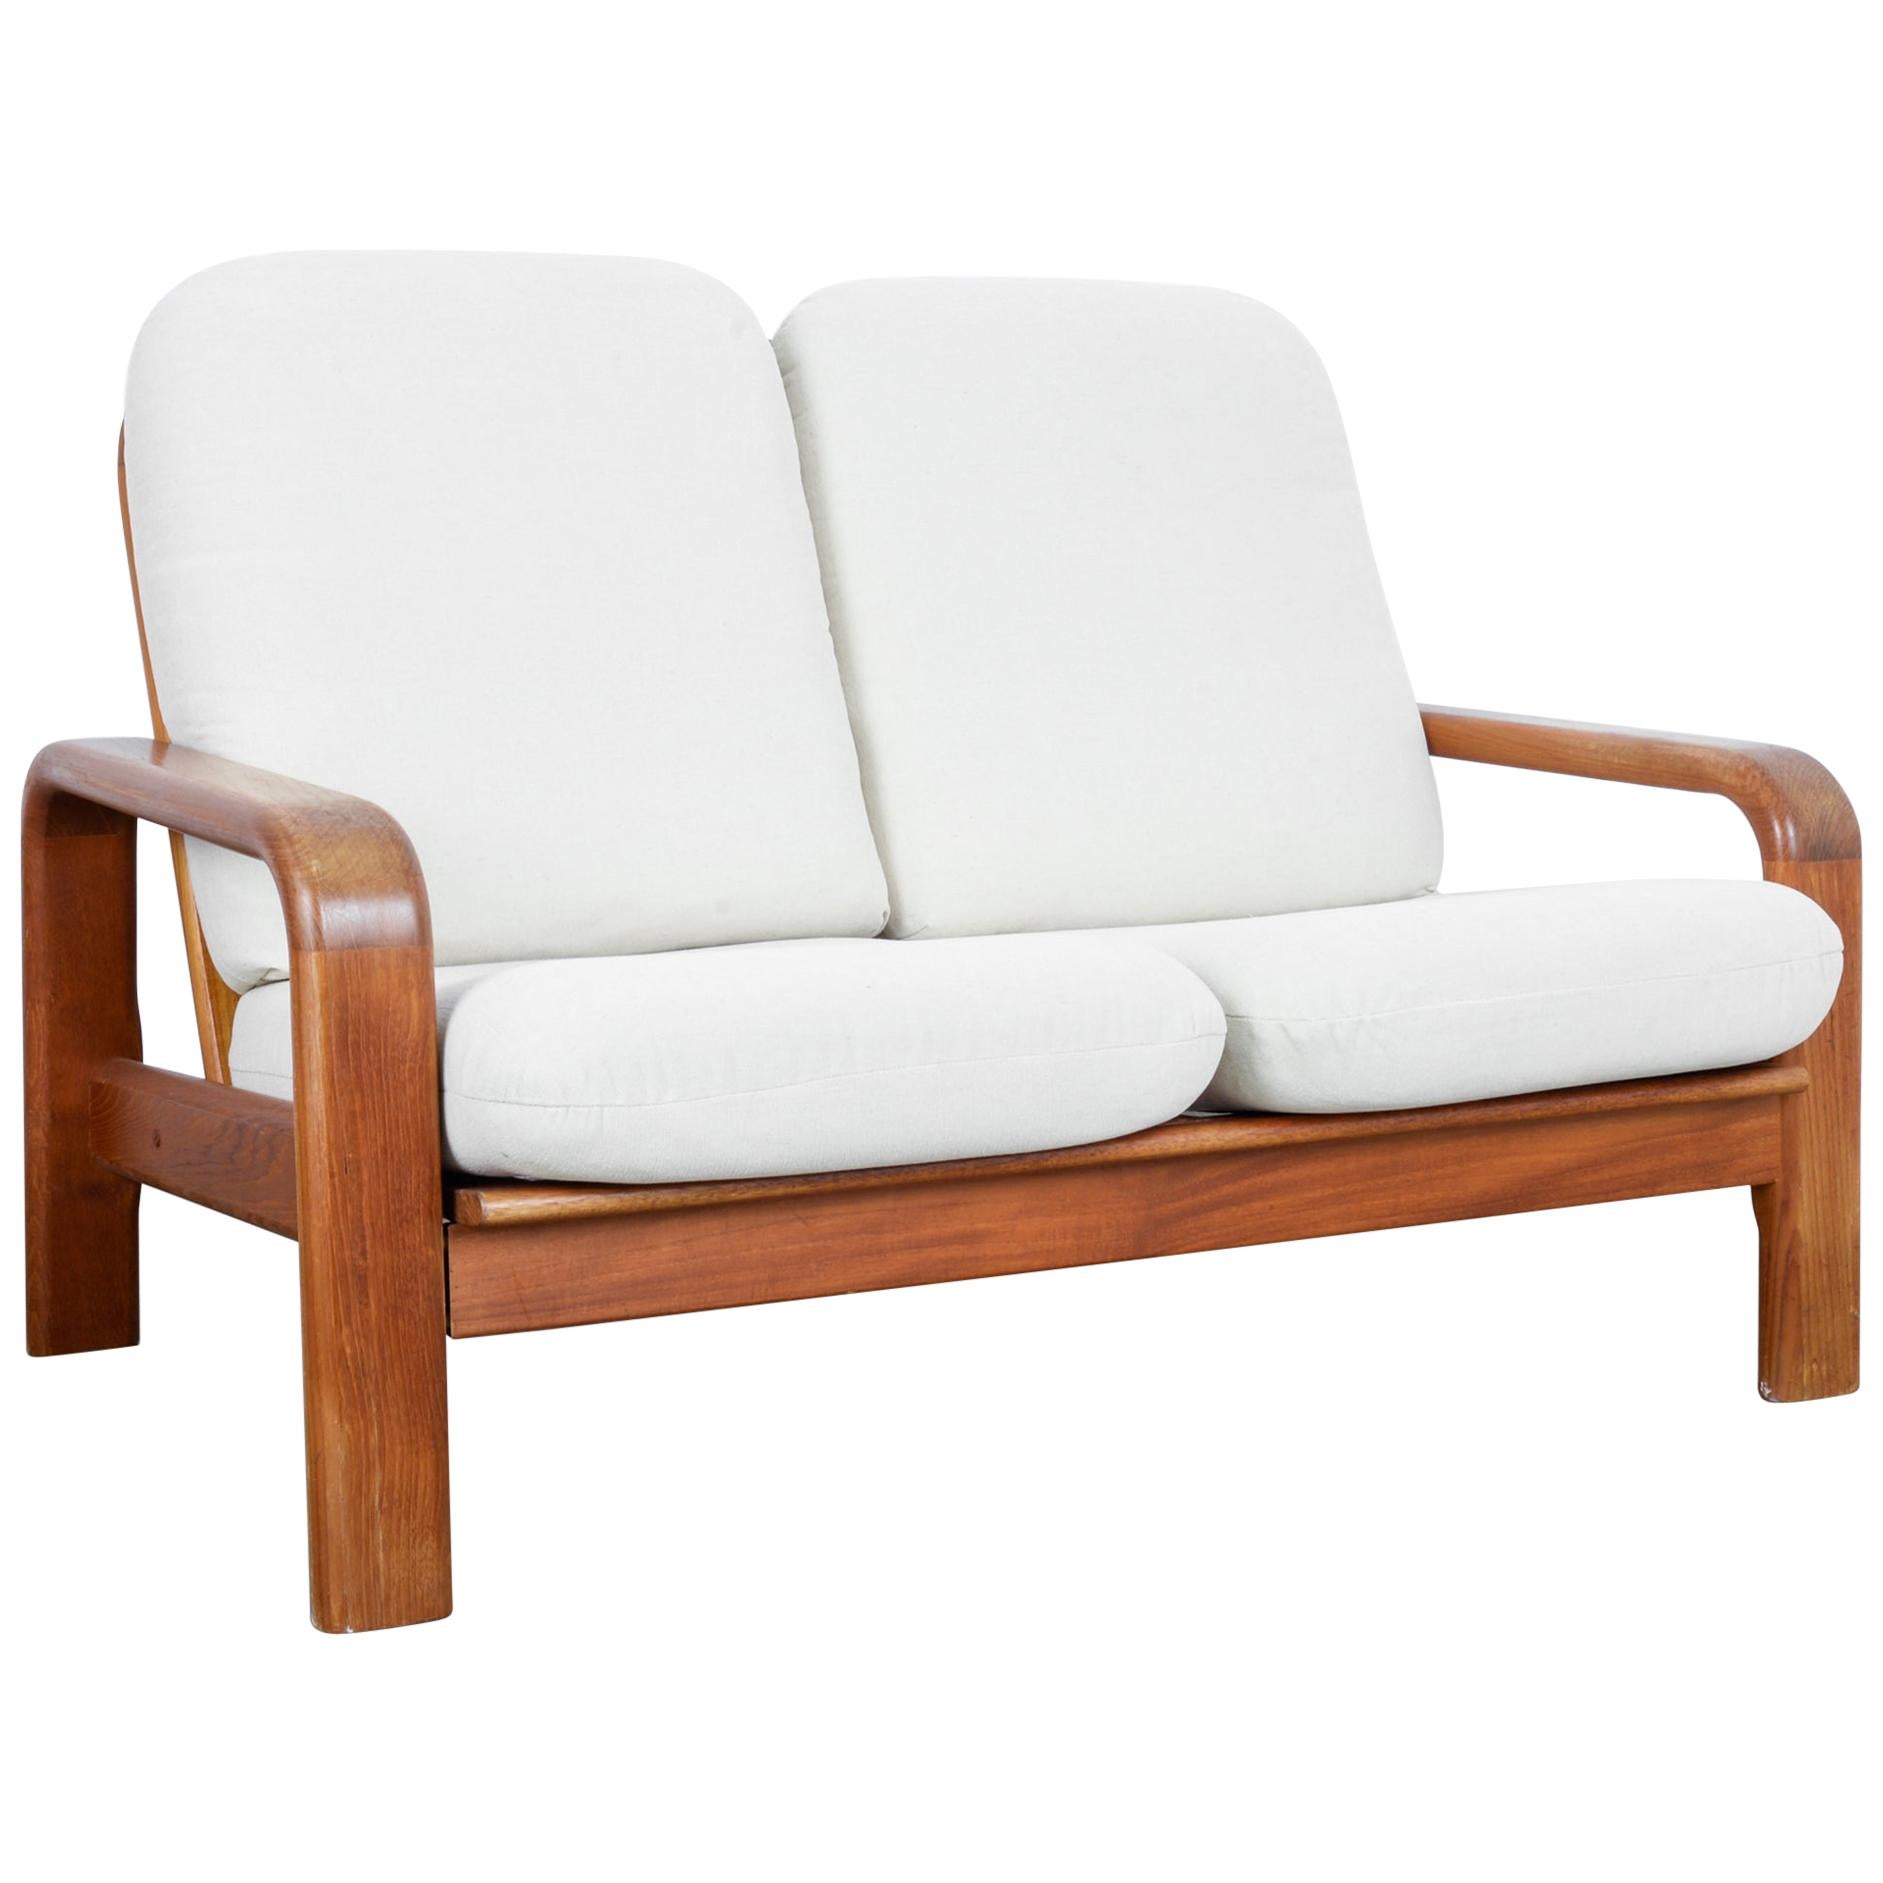 1960s Danish Modern Wooden Sofa